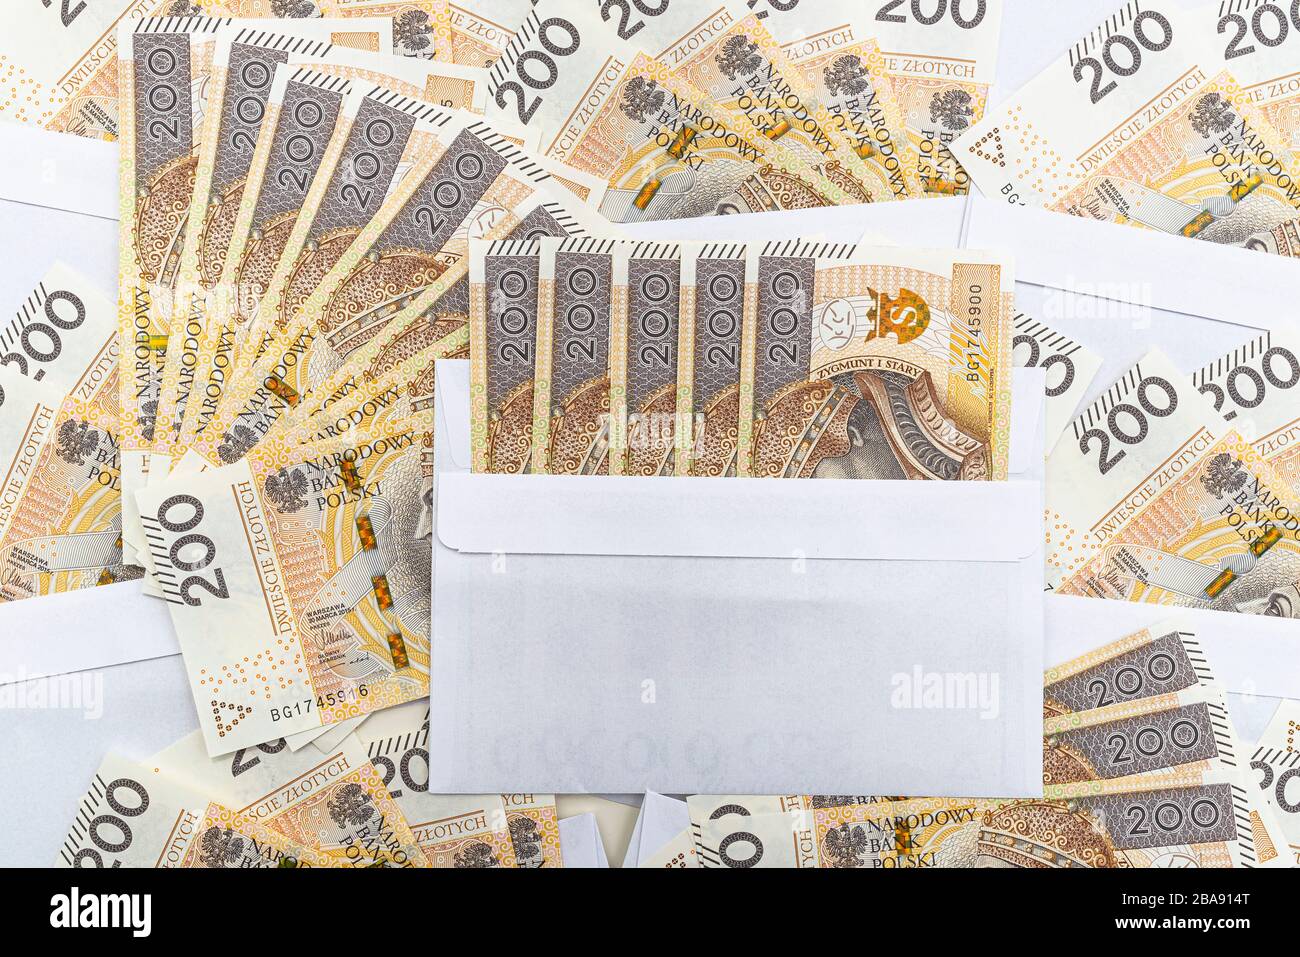 Arrière-plan fait du recto d'un billet polonais de 200 PLN inséré dans une enveloppe blanche, concept de corruption et de corruption. Banque D'Images